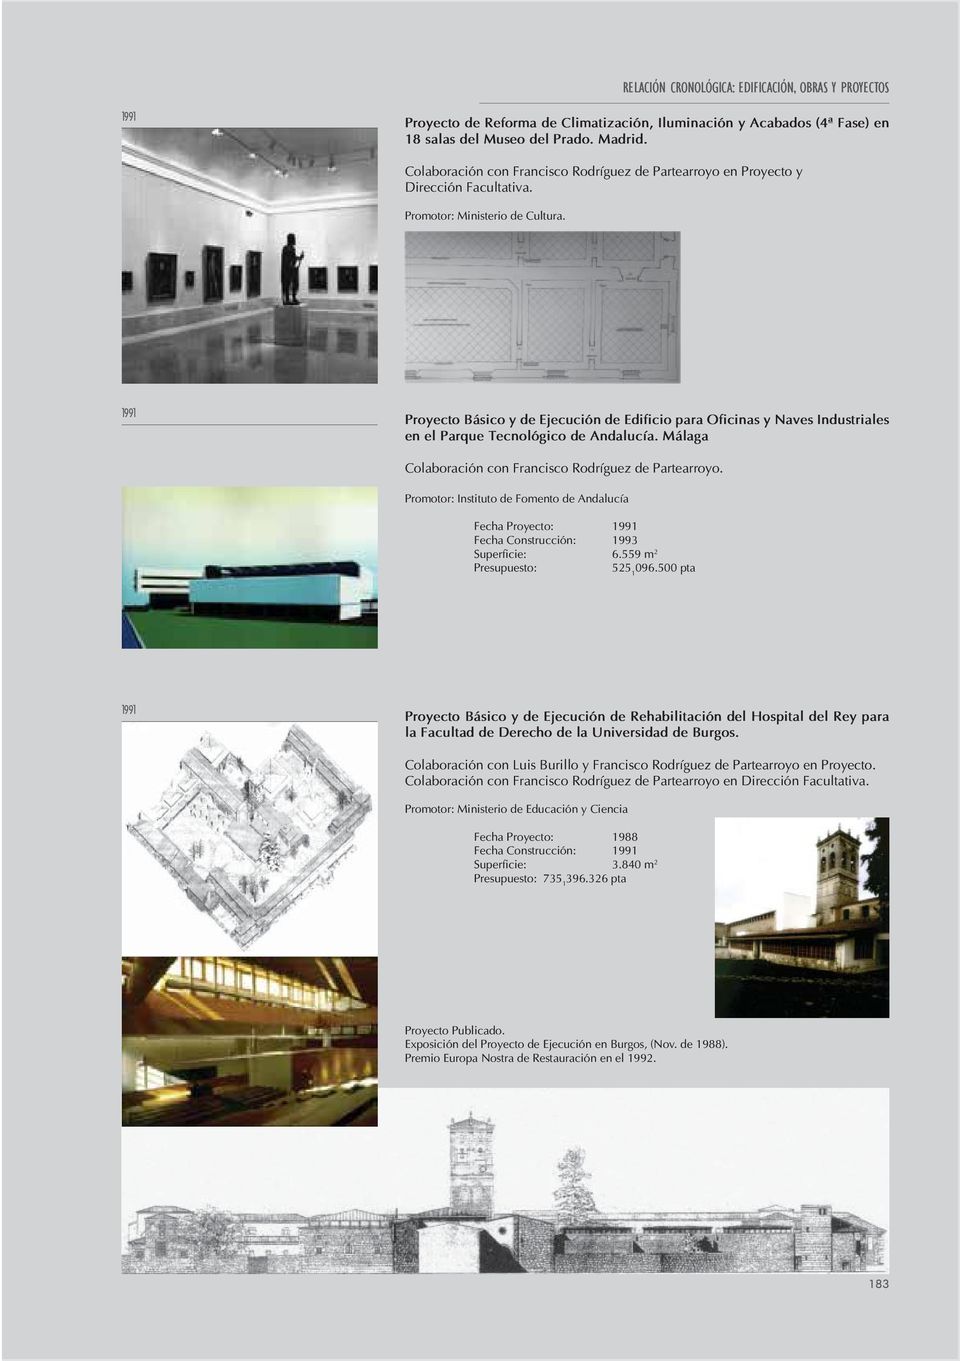 1991 Proyecto Básico y de Ejecución de Edificio para Oficinas y Naves Industriales en el Parque Tecnológico de Andalucía.